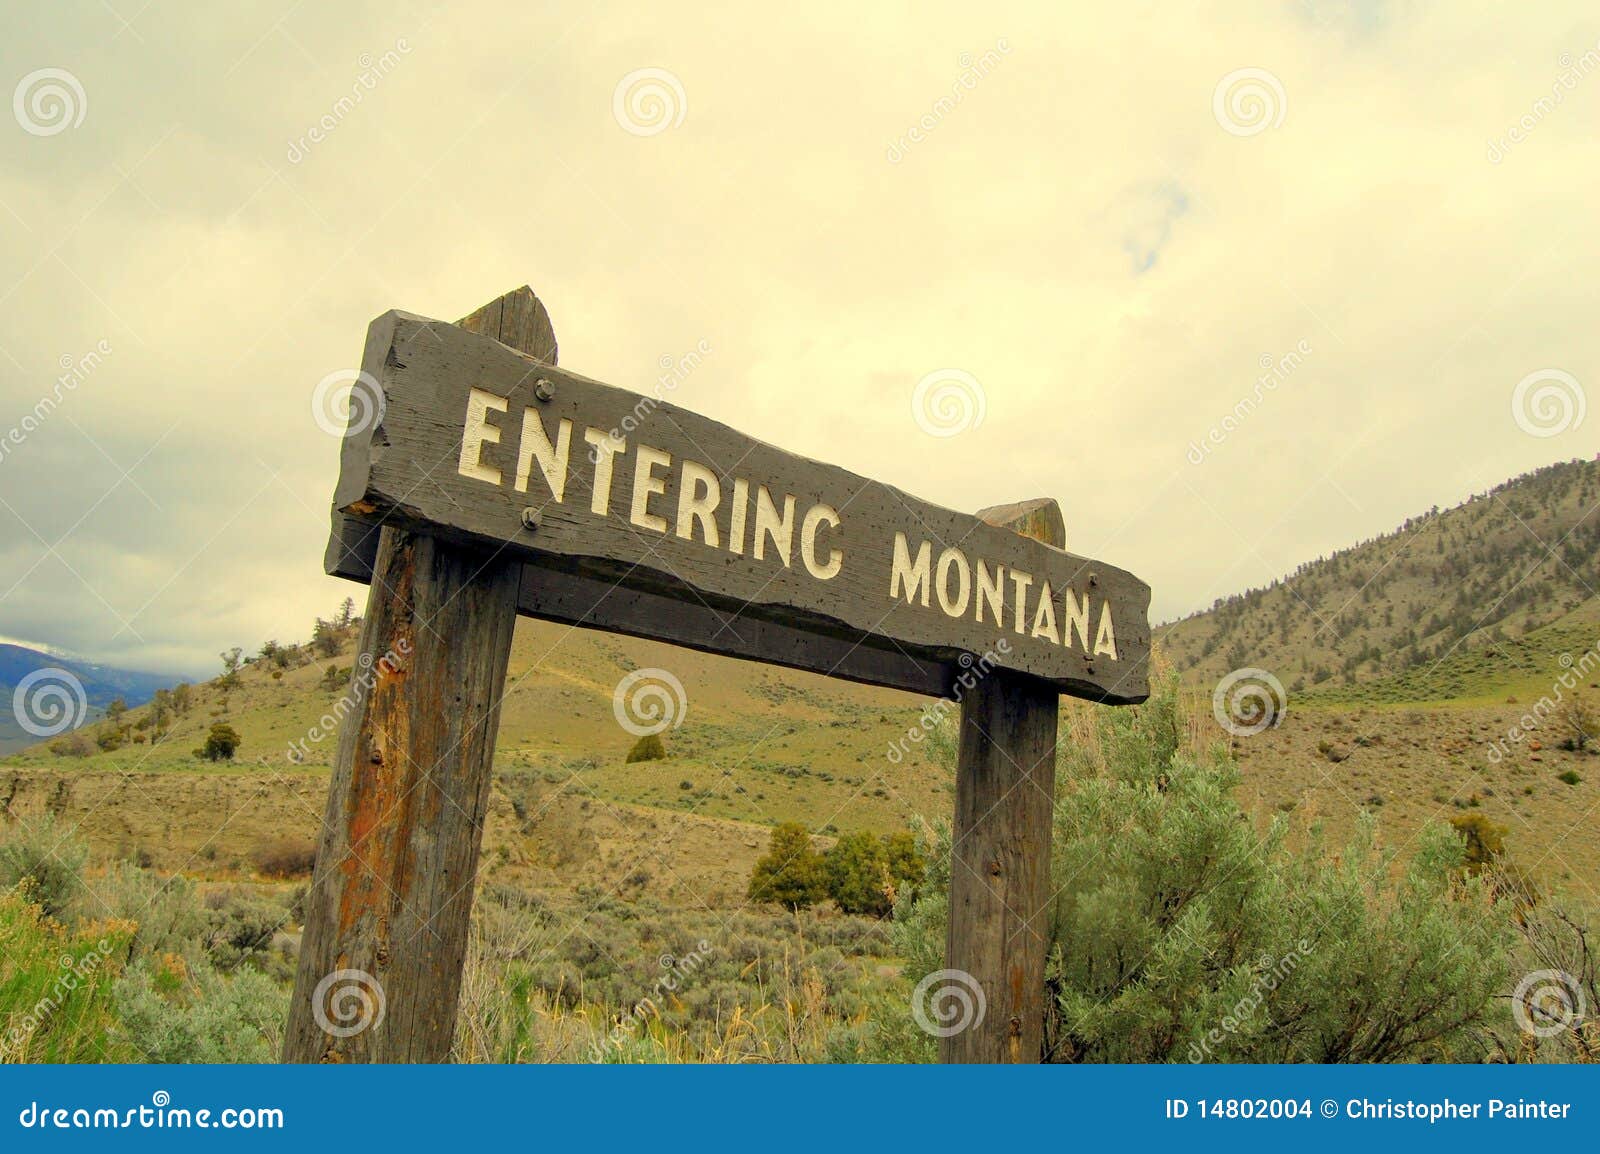 entering montana